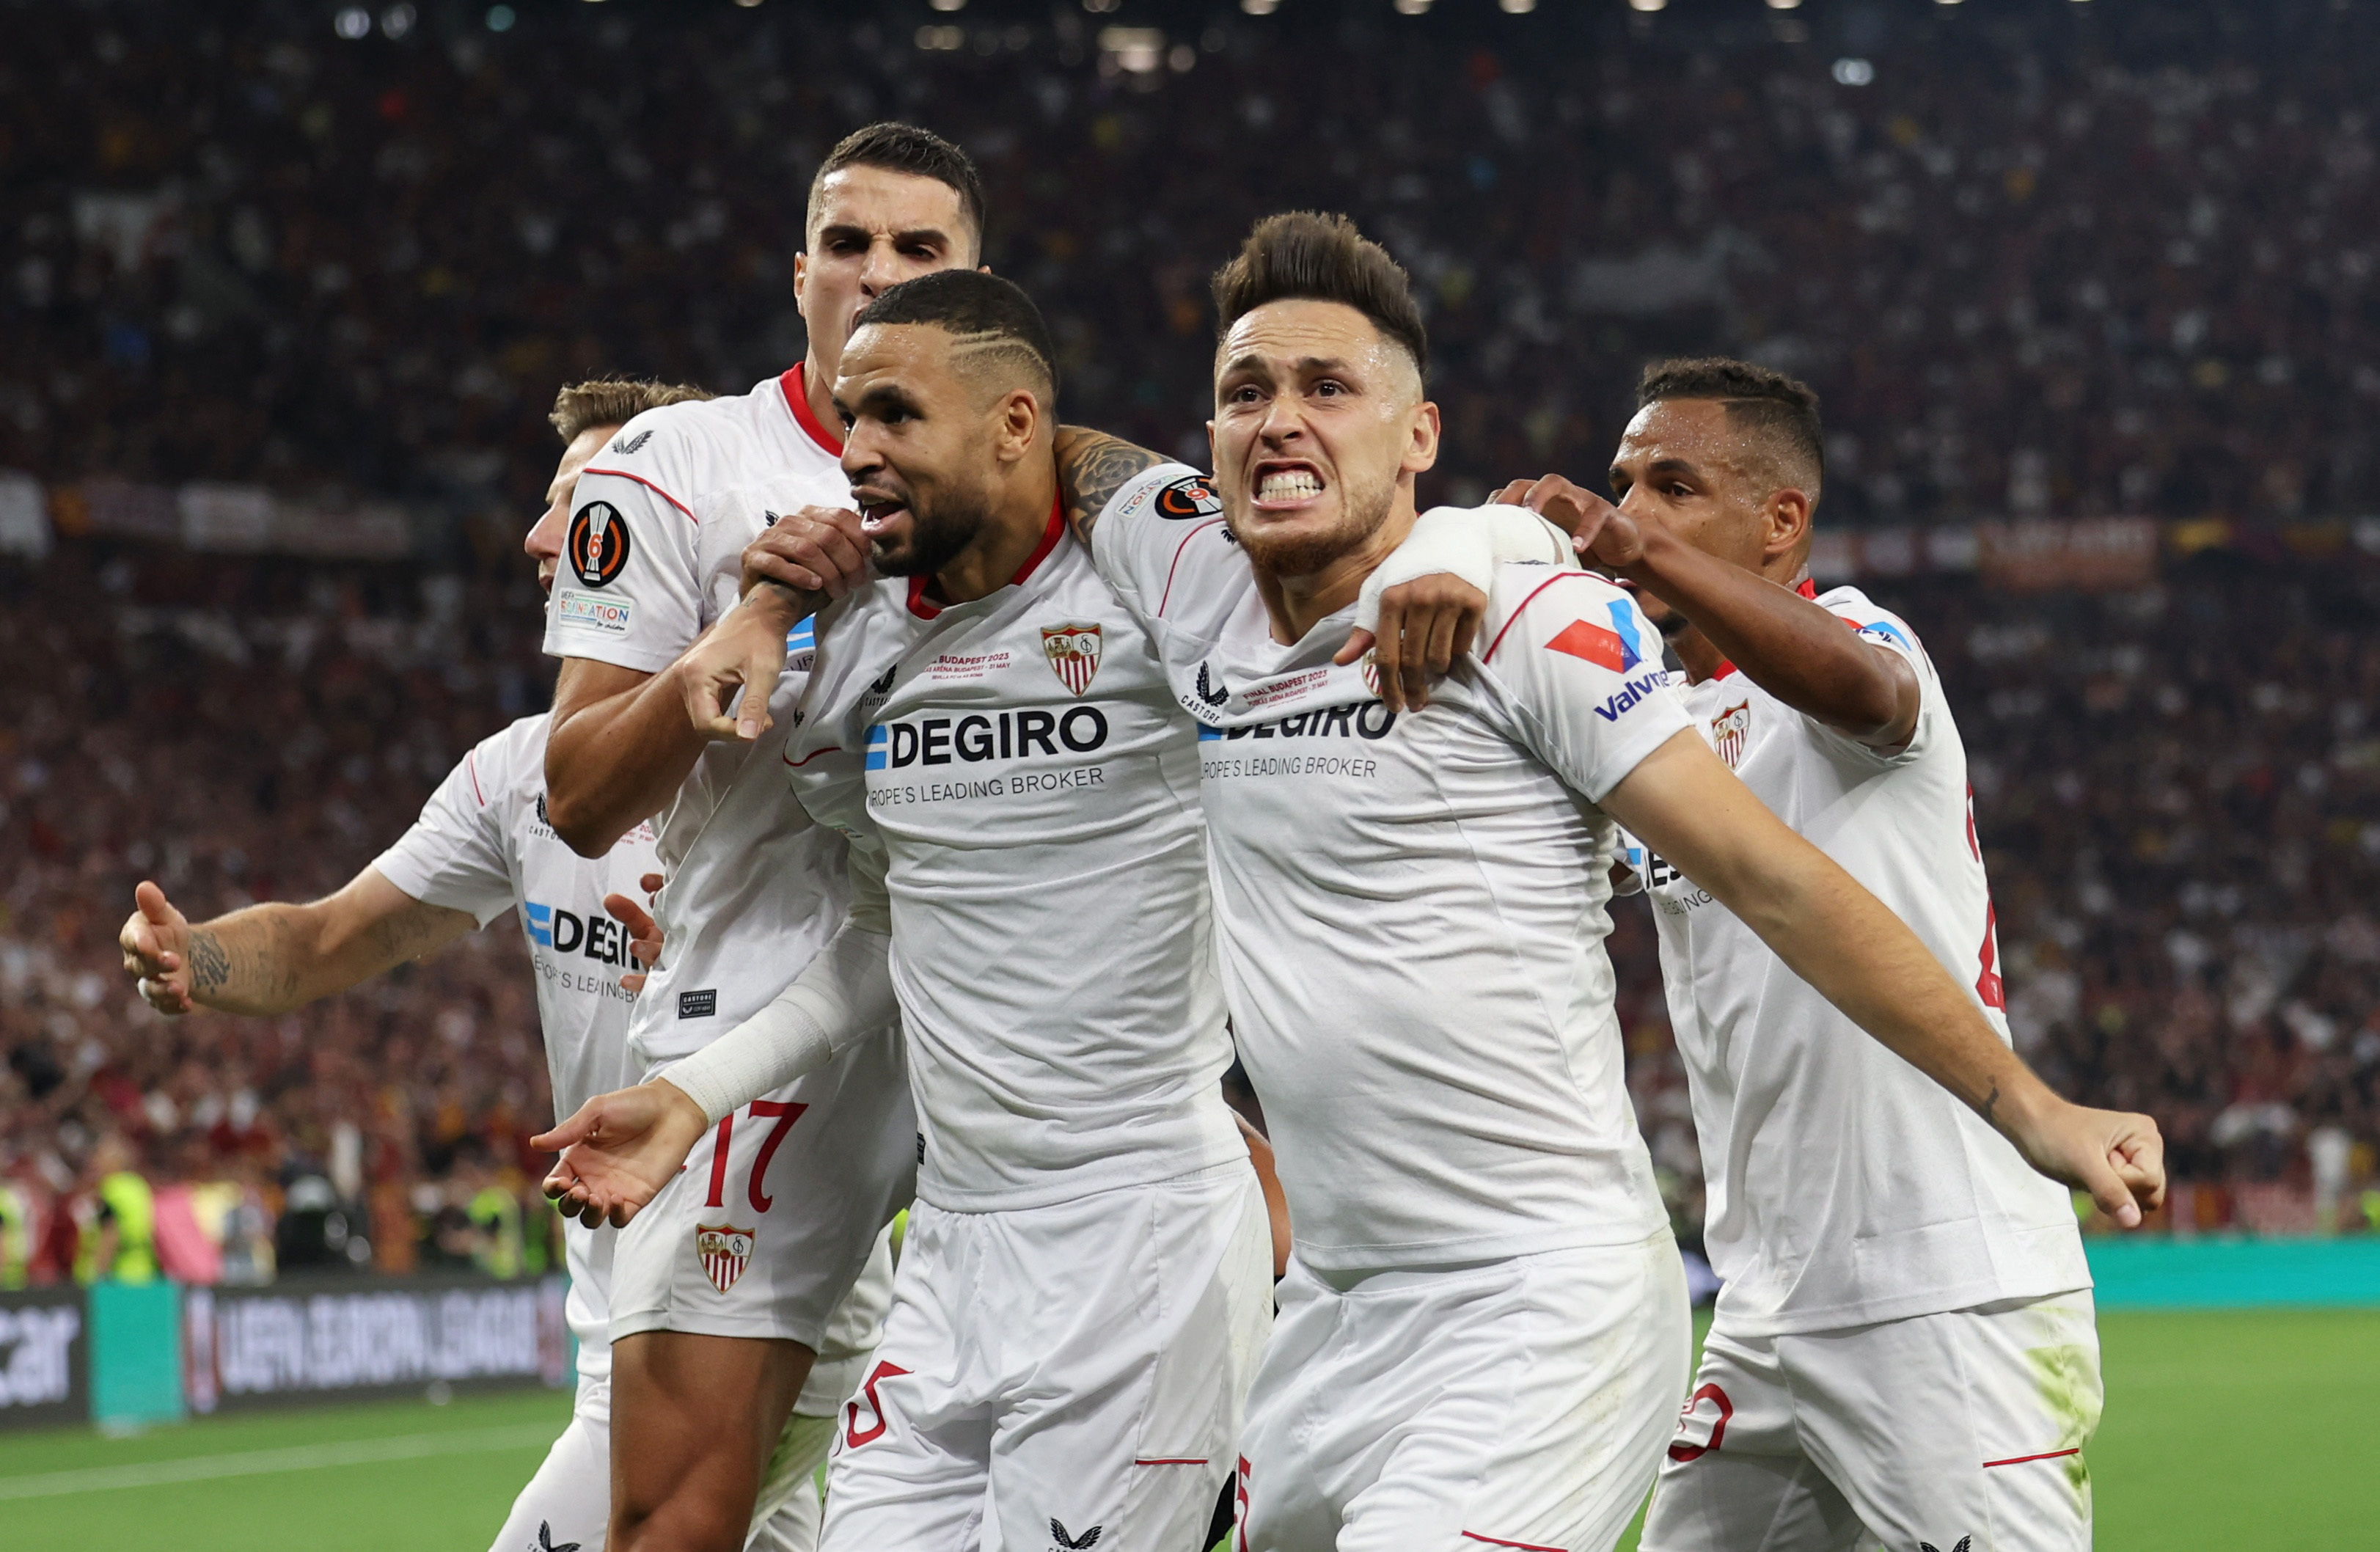 El dato que convierte al Sevilla en el tercer mejor club español en Europa, por delante del Atlético de Madrid